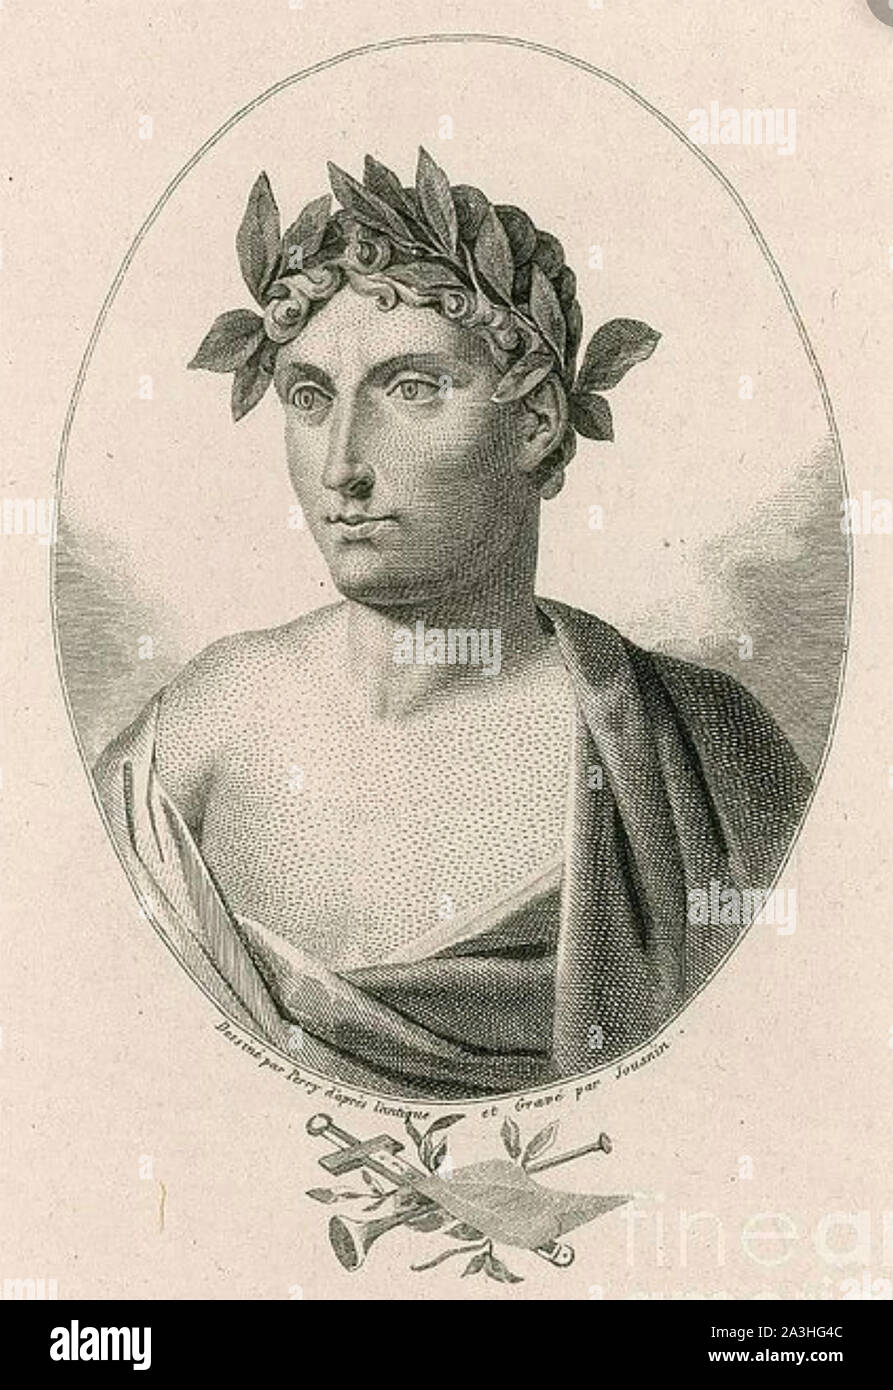 HORACE - QUINTUS STEFFEN FLACCUS (65 v. Chr. - 8 v. Chr.) Römischer Lyriker. 18. jahrhundert Gravur. Stockfoto